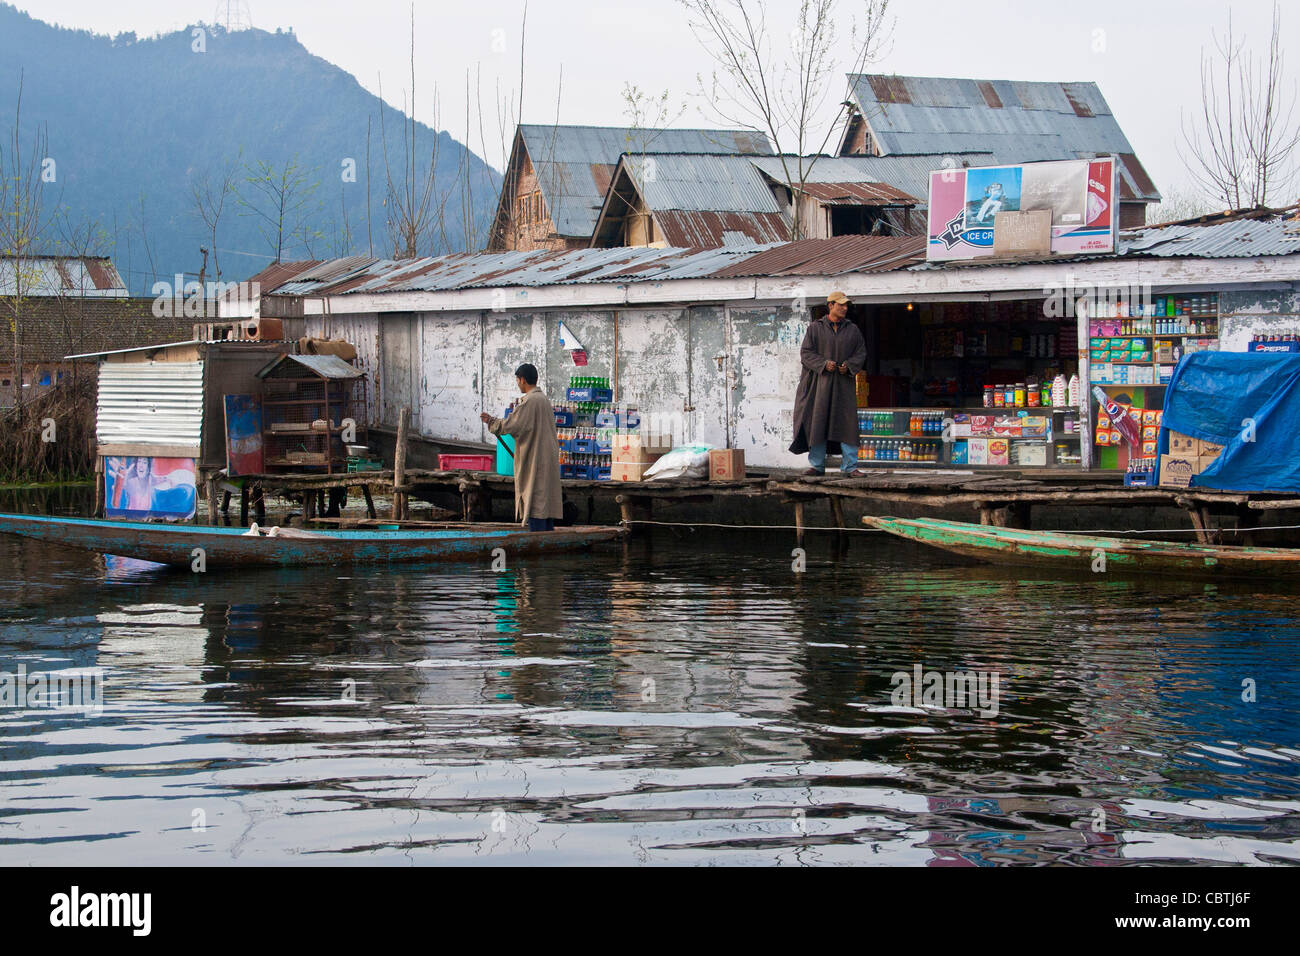 Village typique de Kashmiri dans le lac Nagin de Srinagar, Cachemire, Inde, avec maisons traditionnelles, maisons flottantes, bateaux de campagne et villageois. Banque D'Images